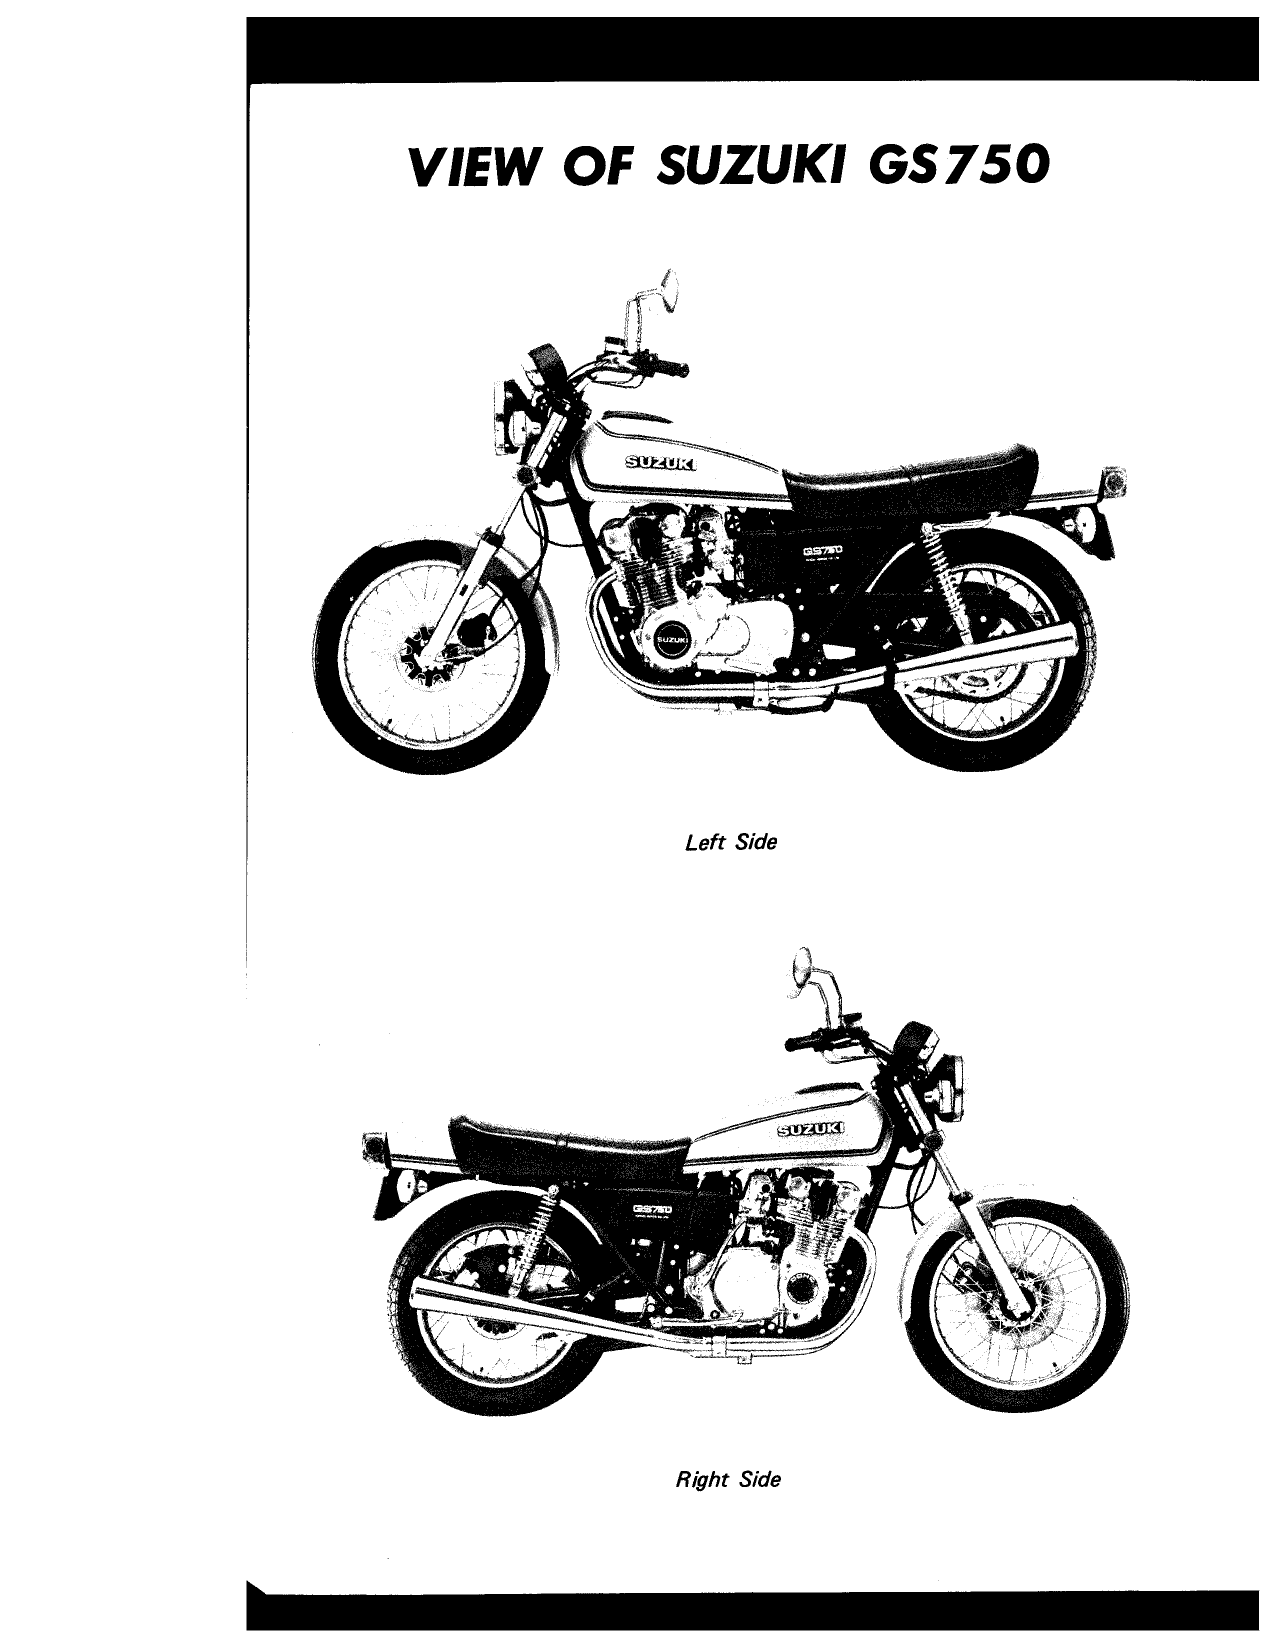 1976-1979 Suzuki GS750 service manual Preview image 3